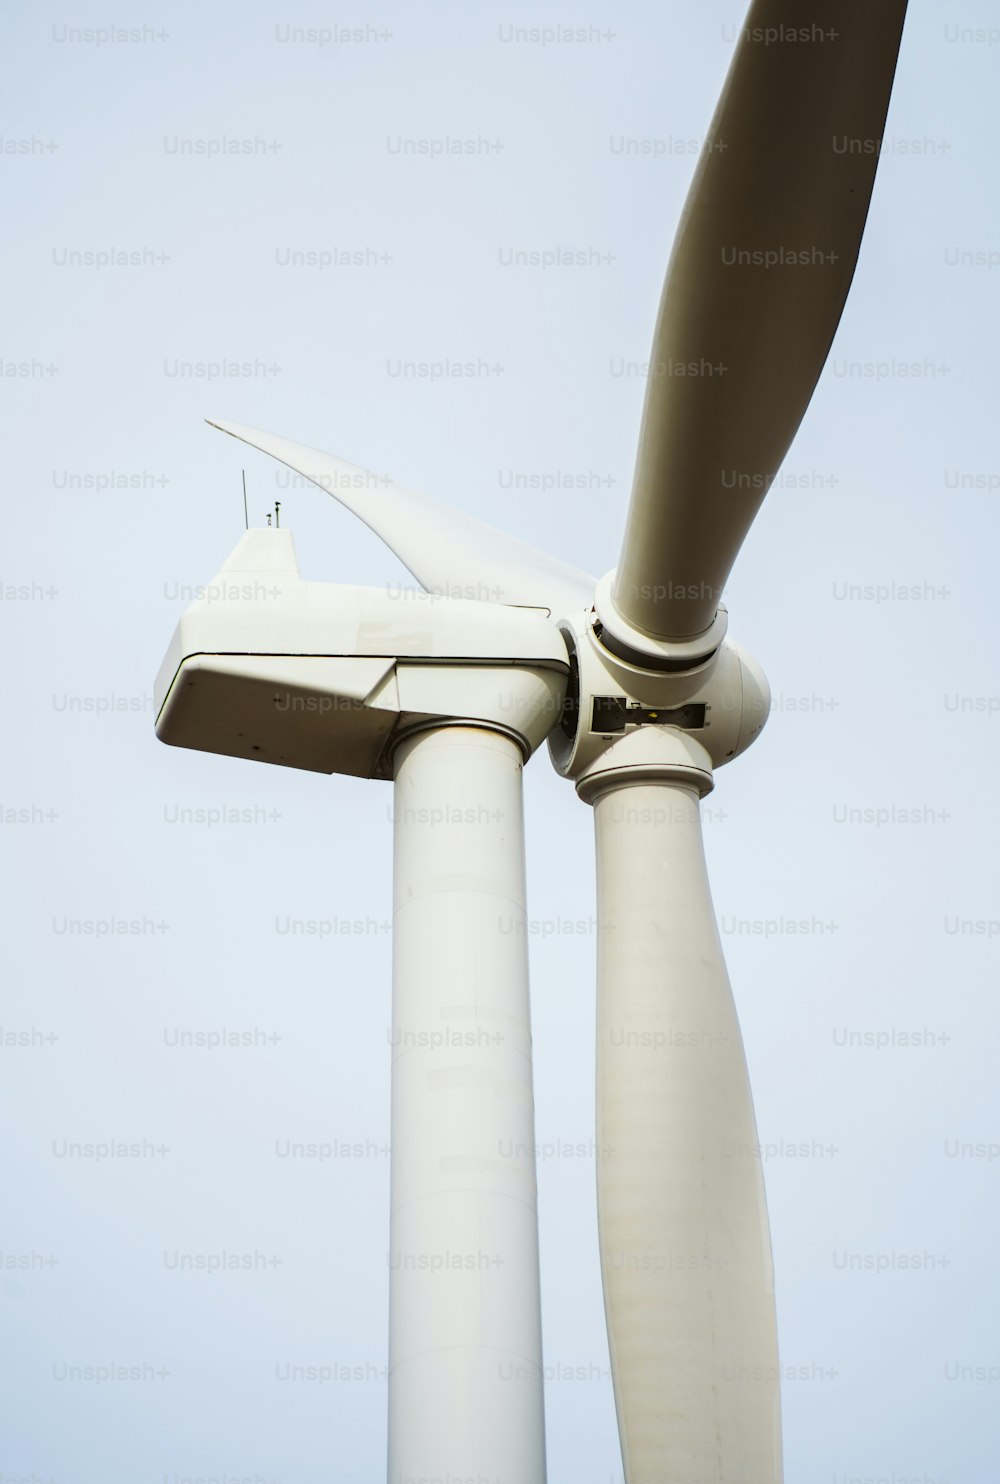 Un primer plano de una turbina eólica en un día despejado